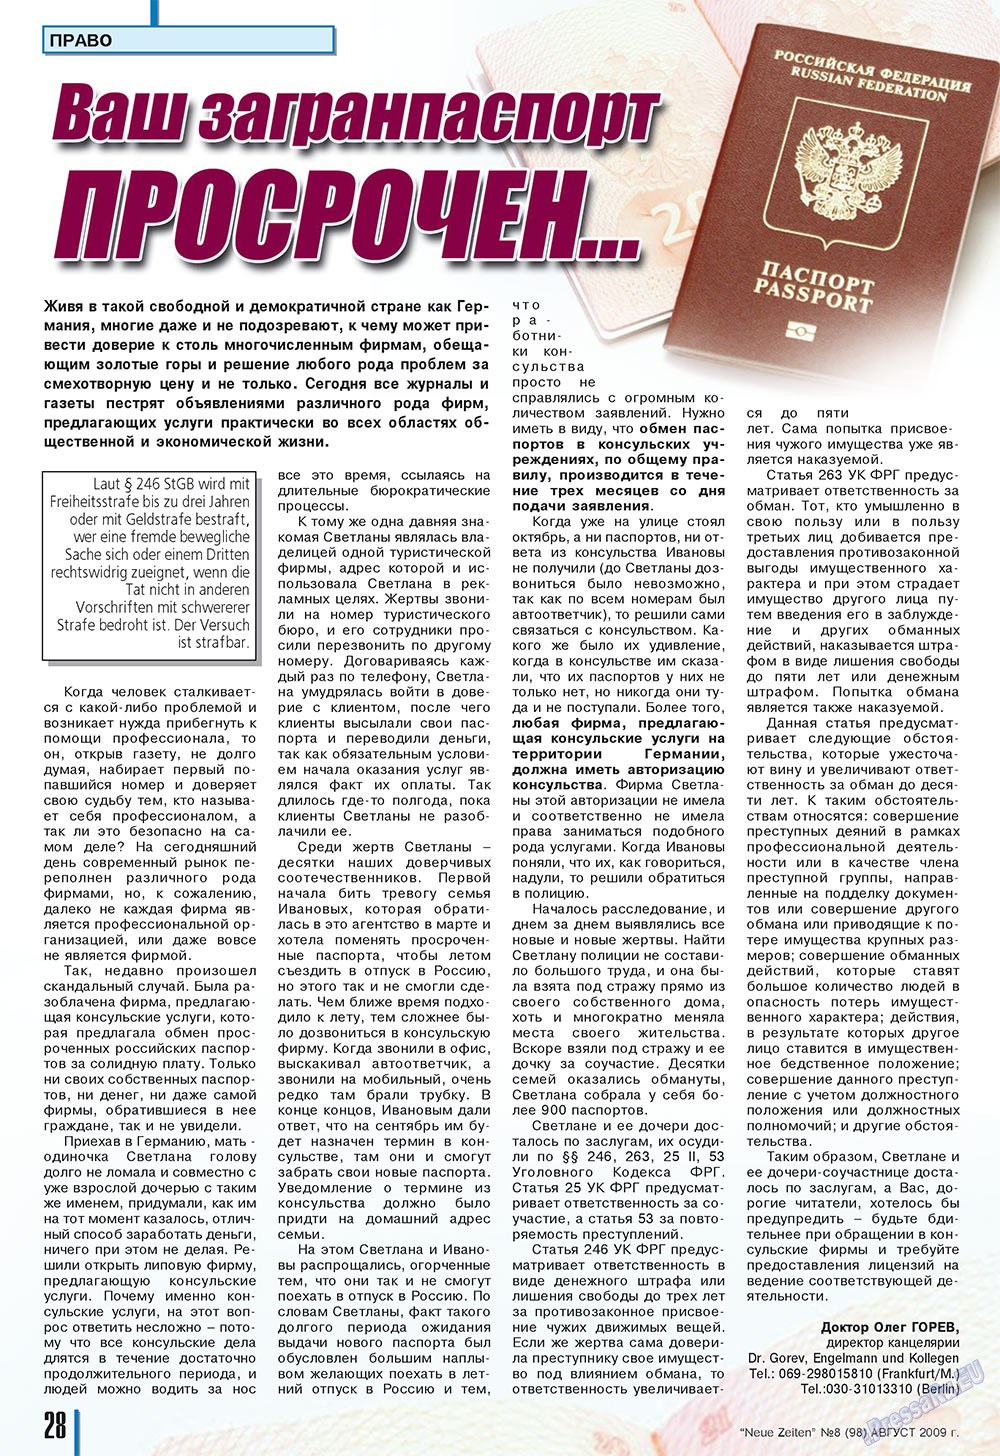 Neue Zeiten, журнал. 2009 №8 стр.28